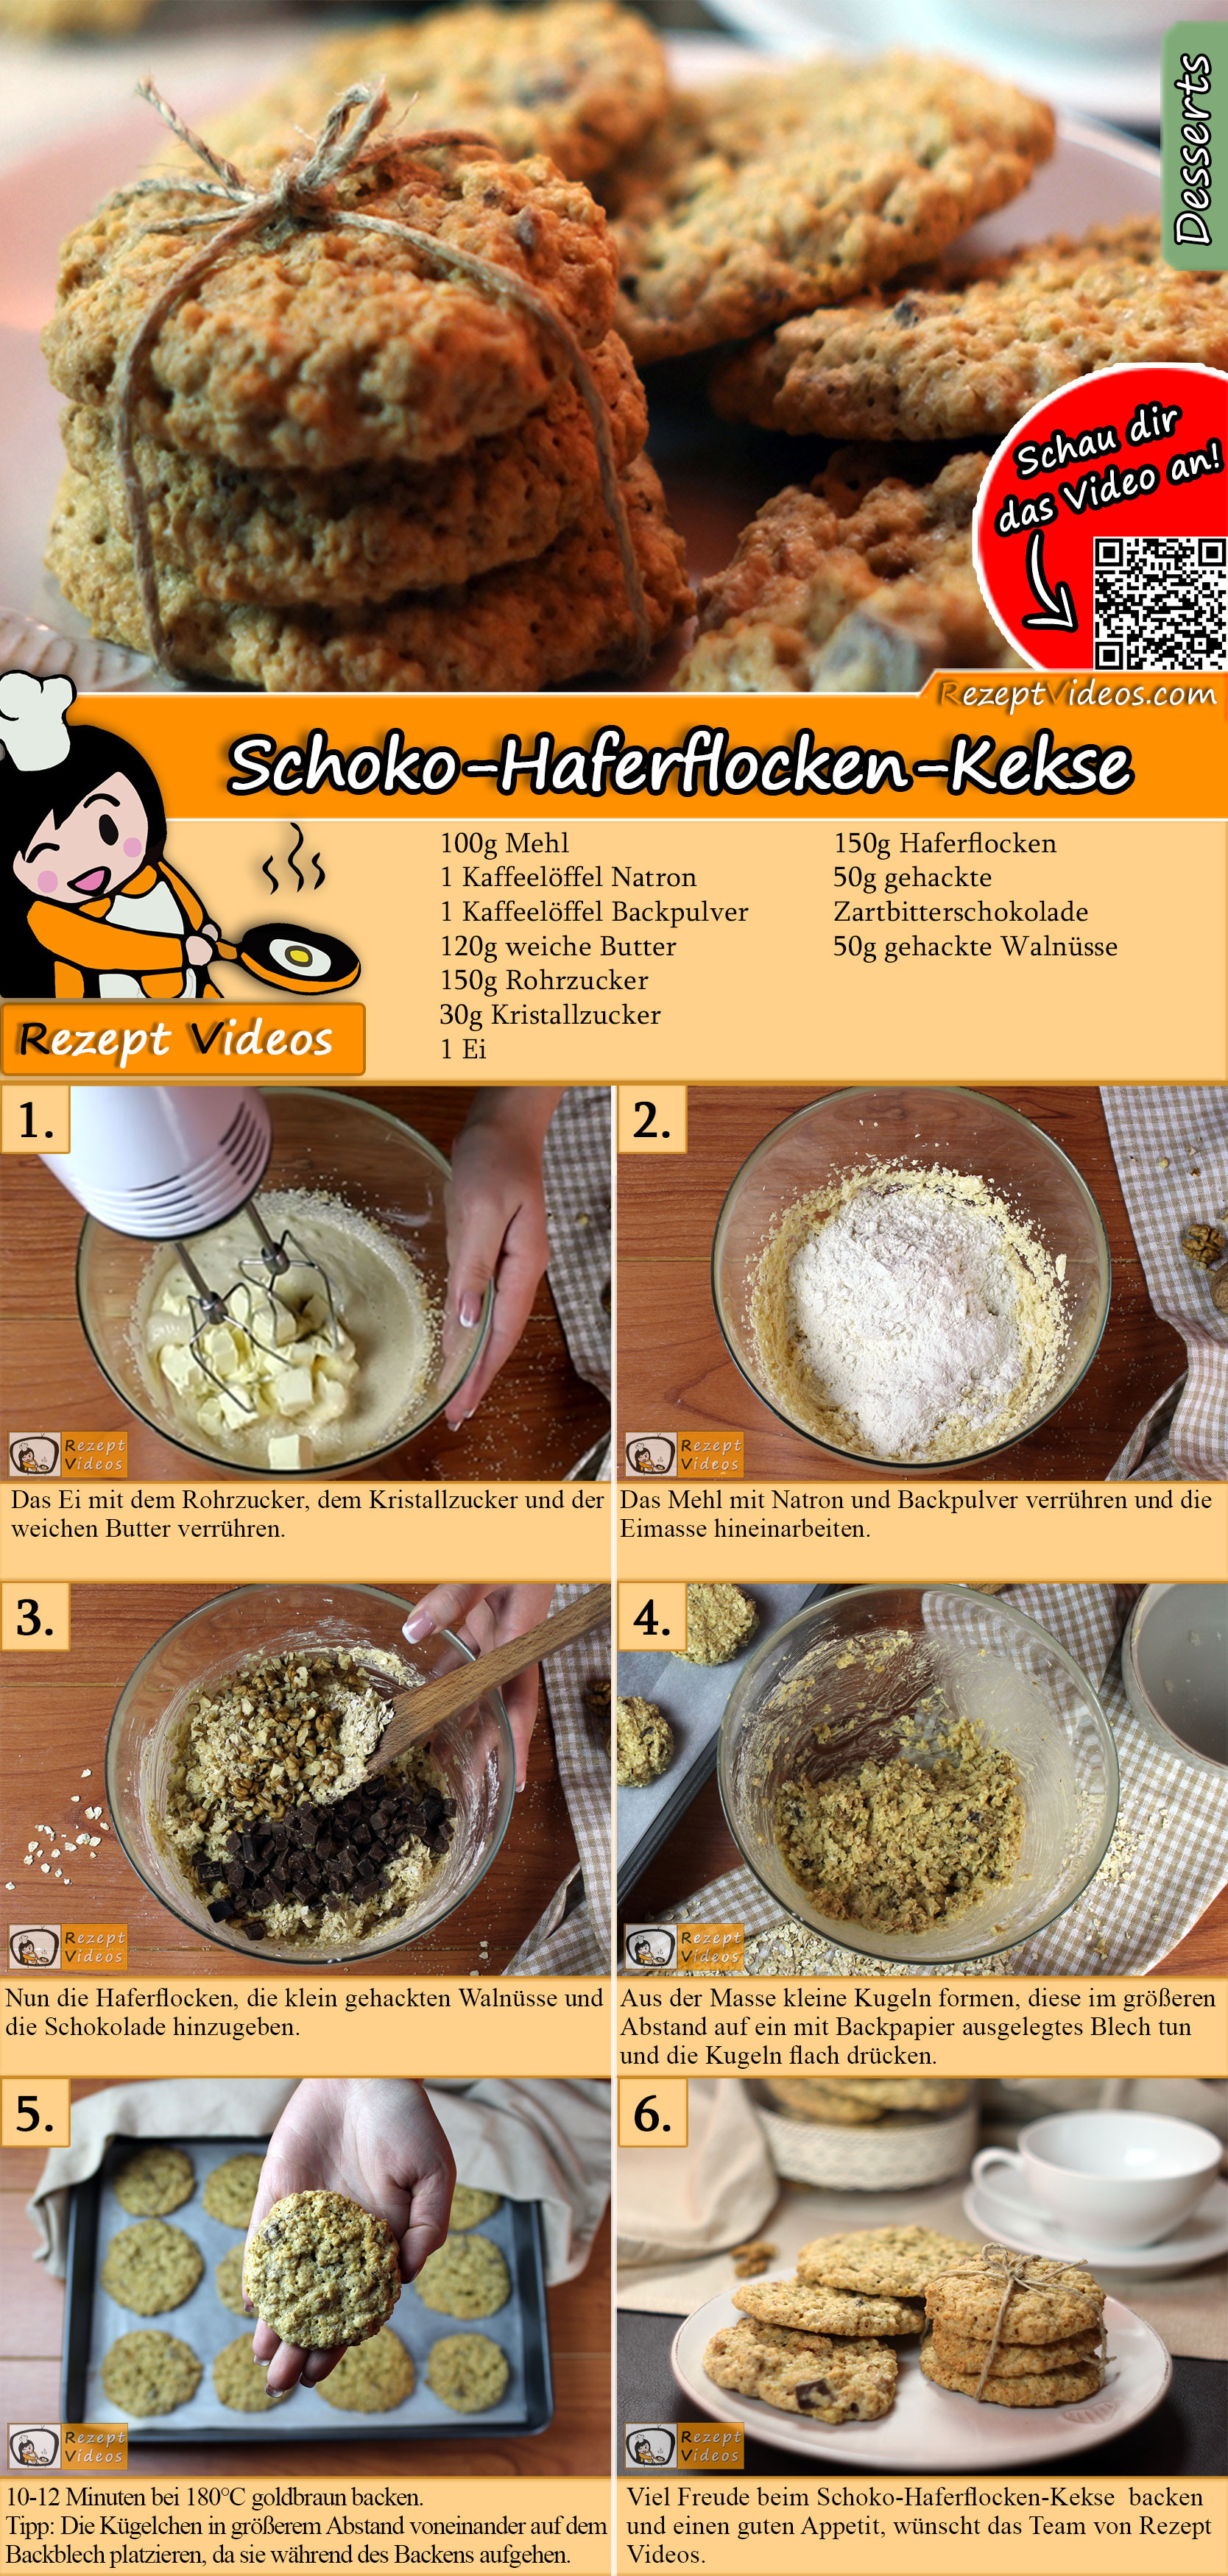 Schoko-Haferflocken-Kekse Rezept mit Video